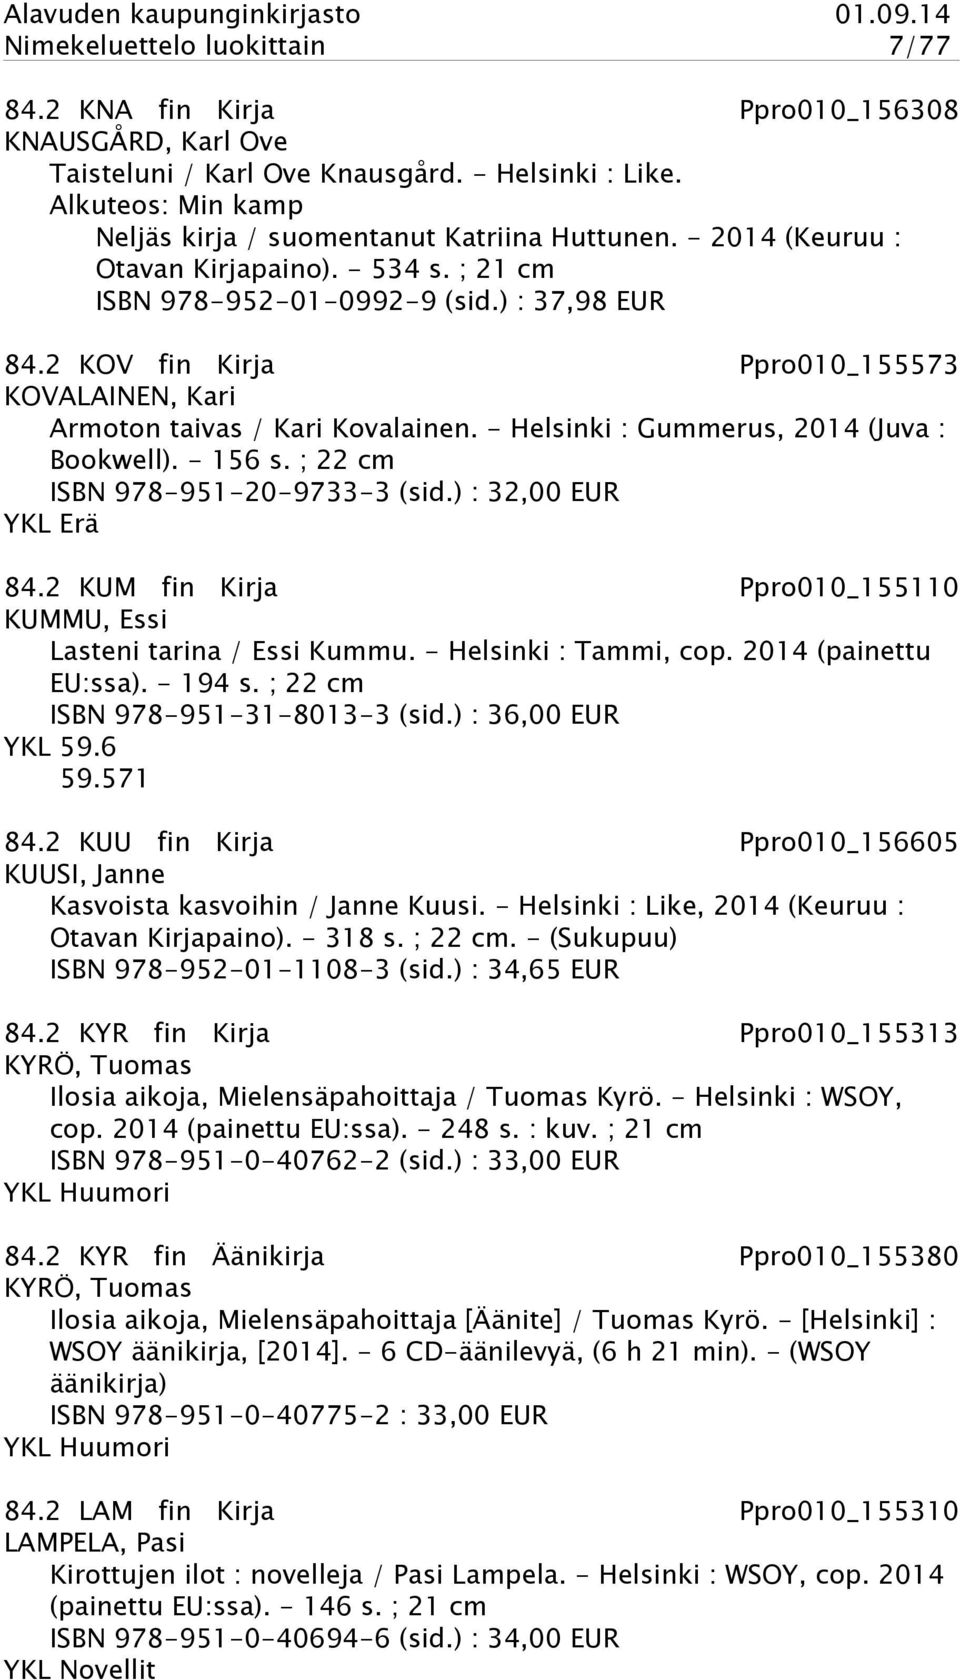 2 KOV fin Kirja Ppro010_155573 KOVALAINEN, Kari Armoton taivas / Kari Kovalainen. - Helsinki : Gummerus, 2014 (Juva : Bookwell). - 156 s. ; 22 cm ISBN 978-951-20-9733-3 (sid.) : 32,00 EUR YKL Erä 84.